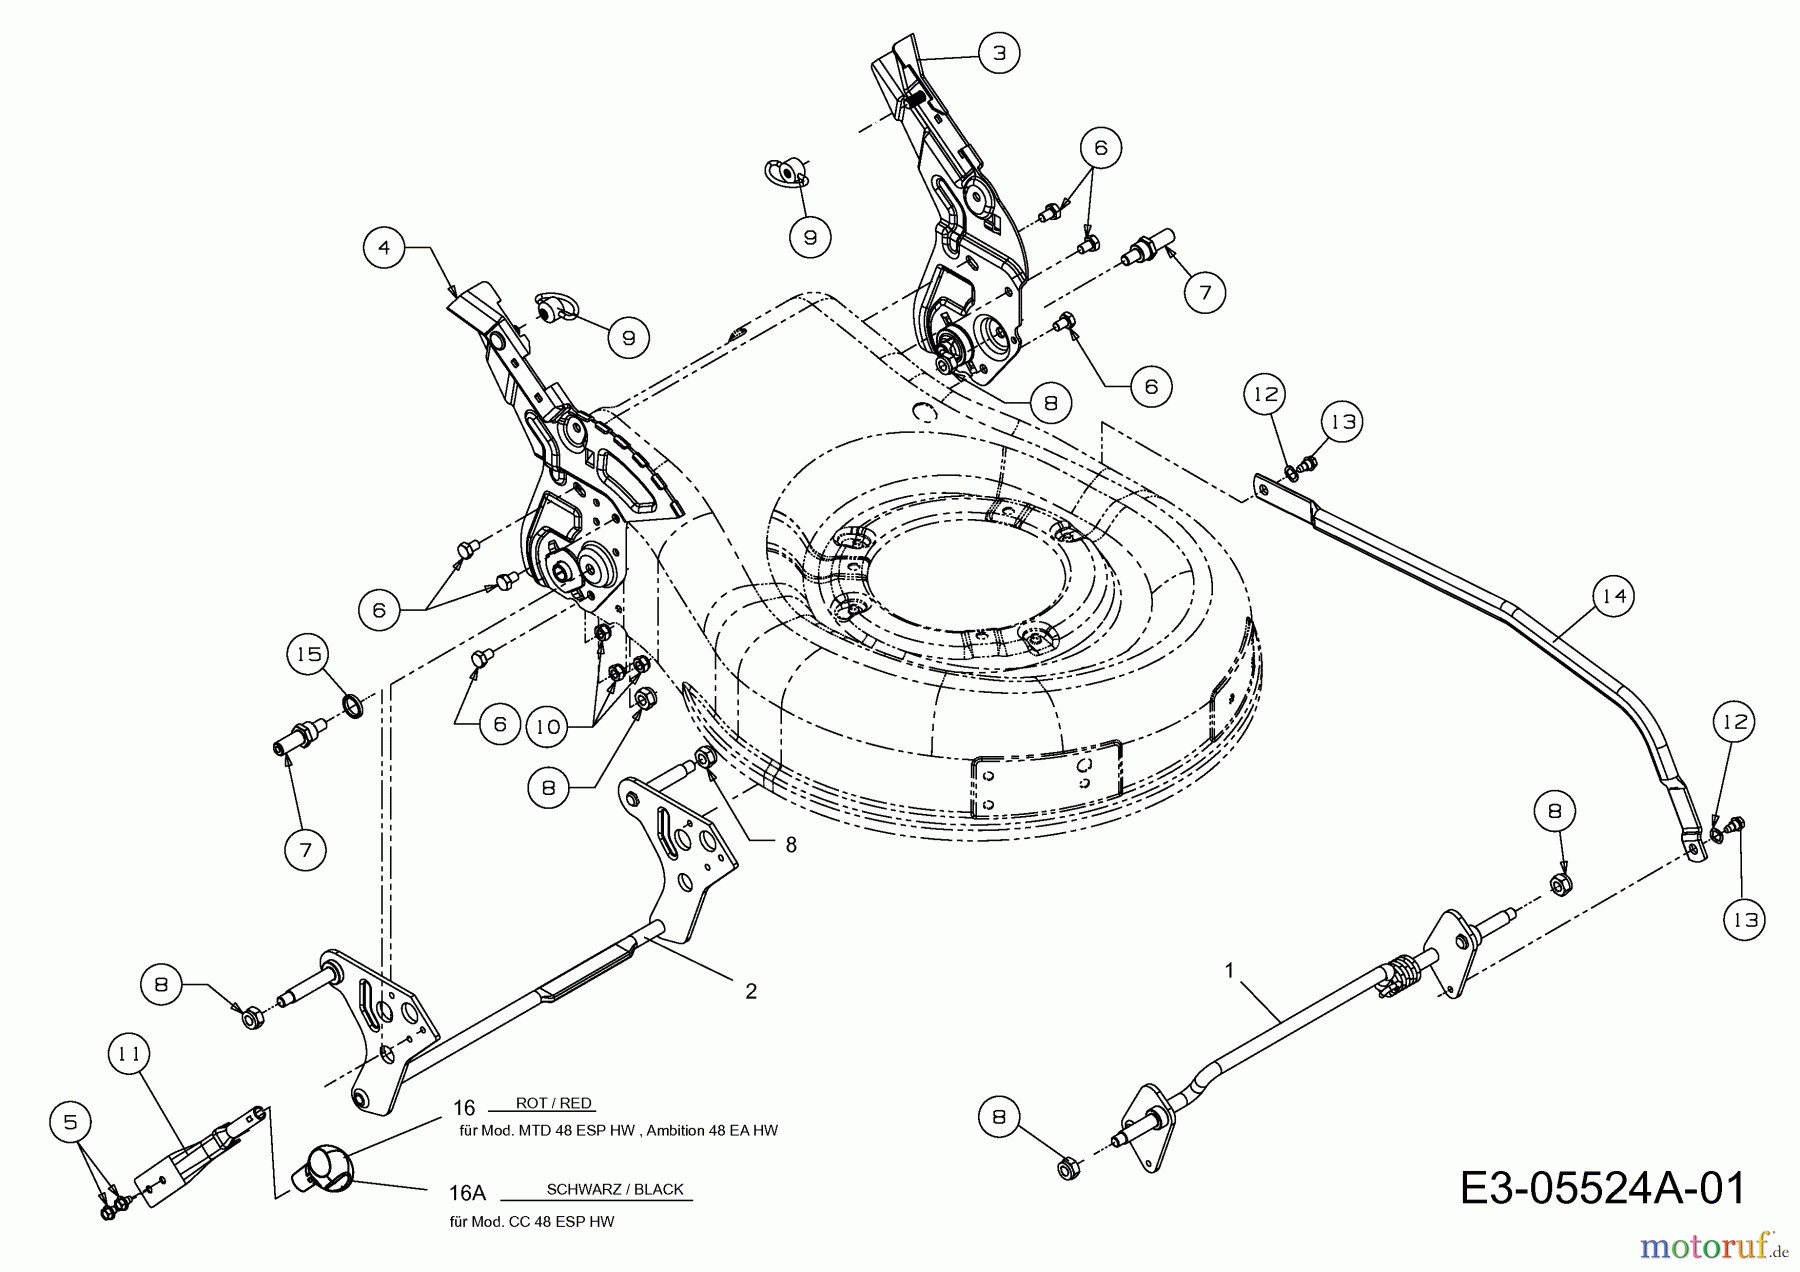  Mac Allister Motormäher mit Antrieb MBR 80048 ECO 12A-129J668  (2014) Schnitthöhenverstellung